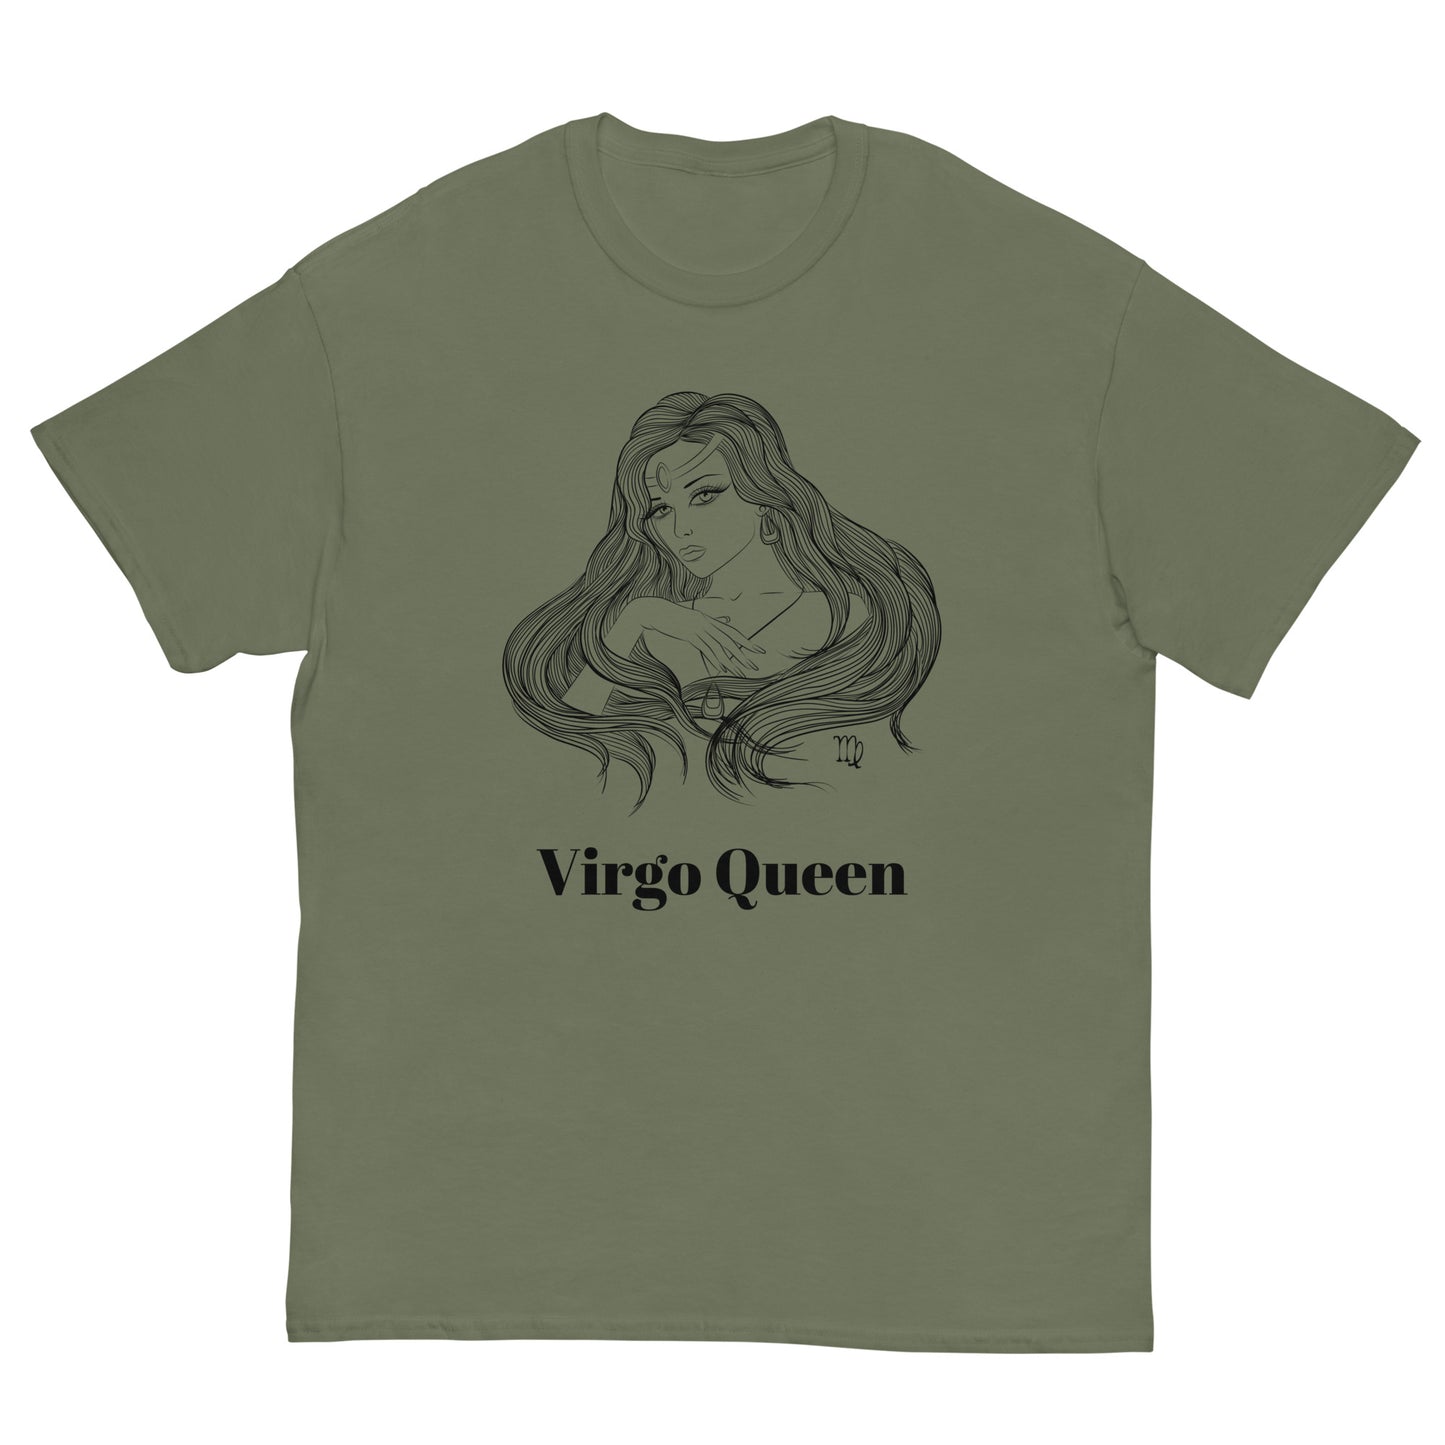 Virgo Queen Tee | Zodiac Tee | Hip Hop Tee | Aesthetic Graphic Tee